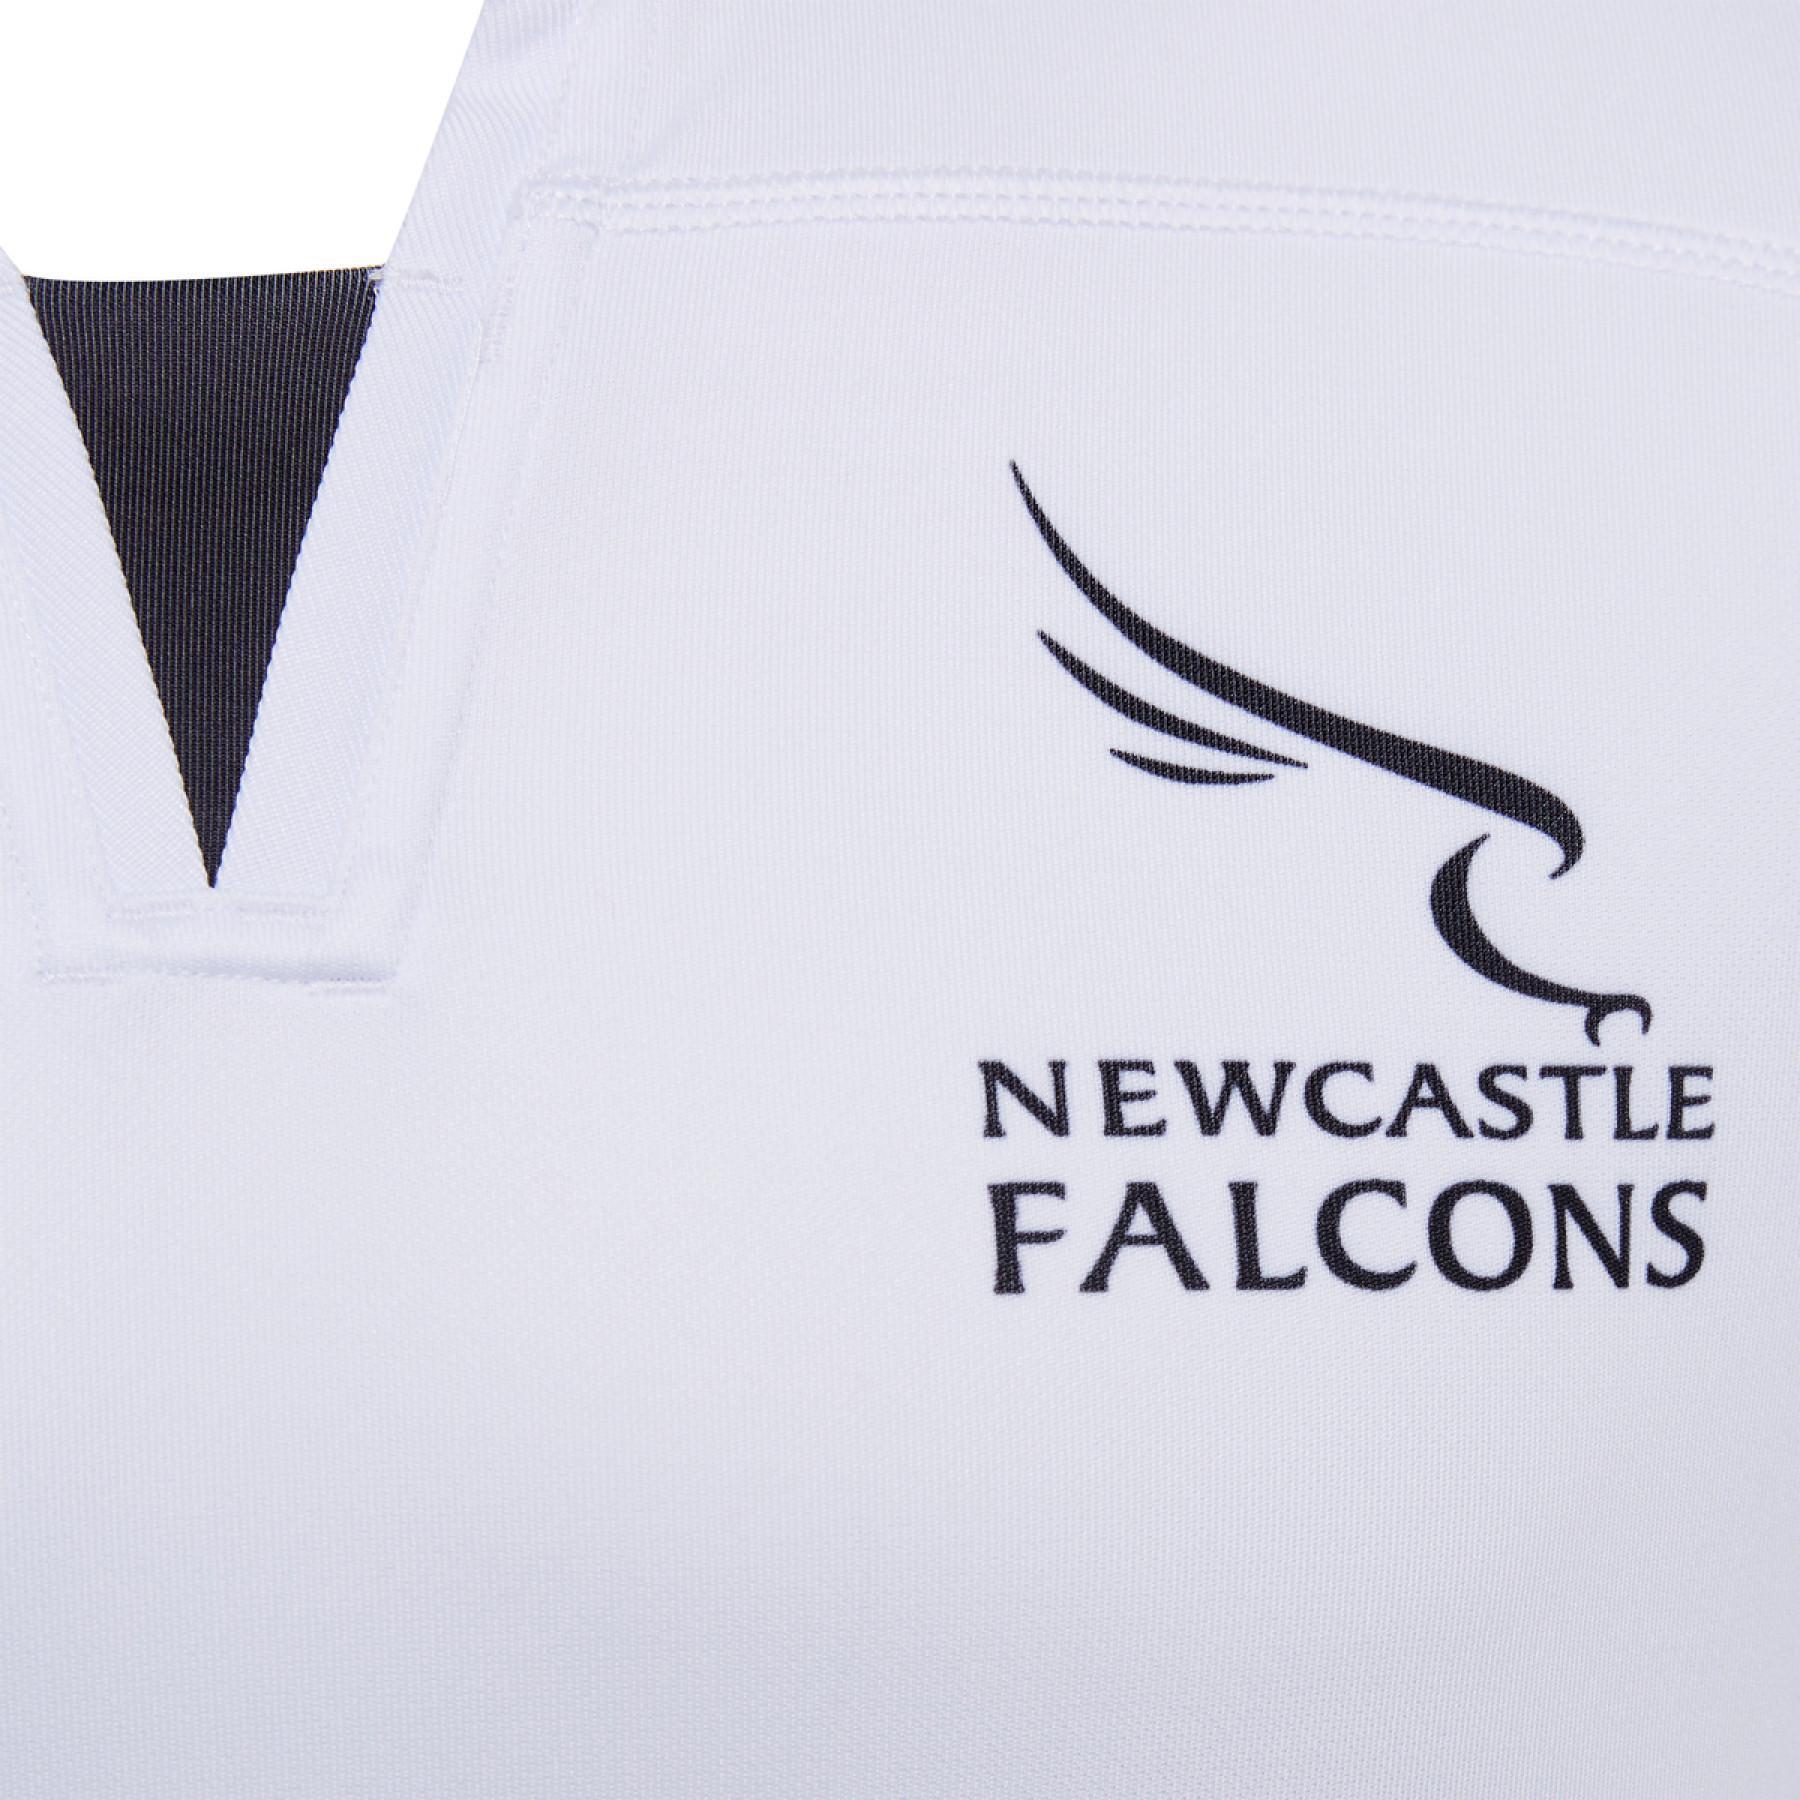 Maglia esterna Newcastle falcons 2020/21